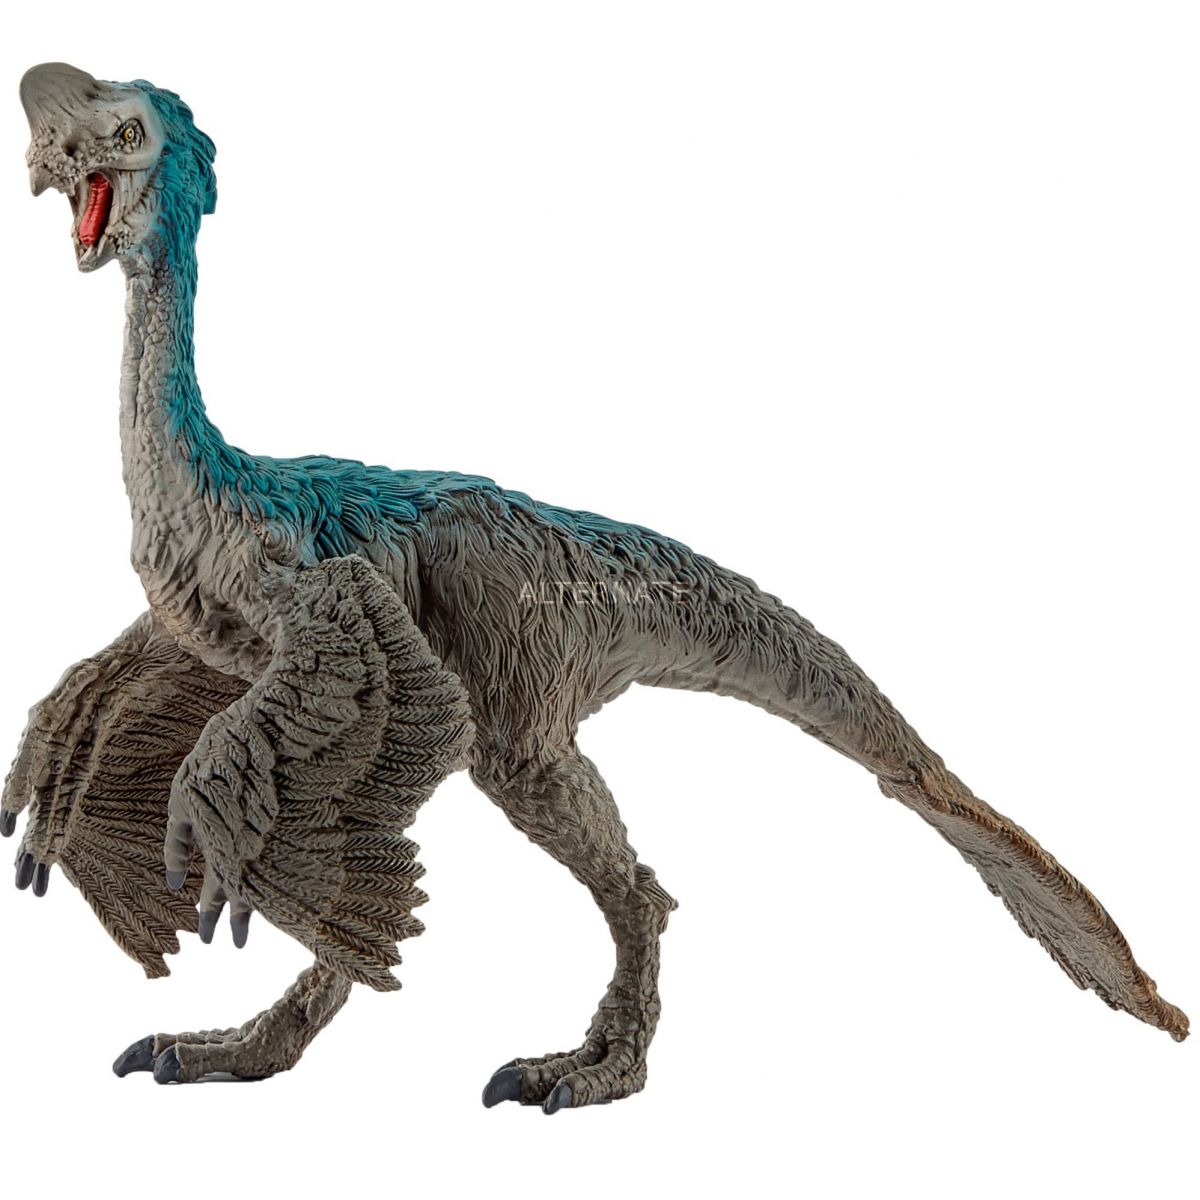 Schleich 15001 Prehistorické zvířátko Oviraptor